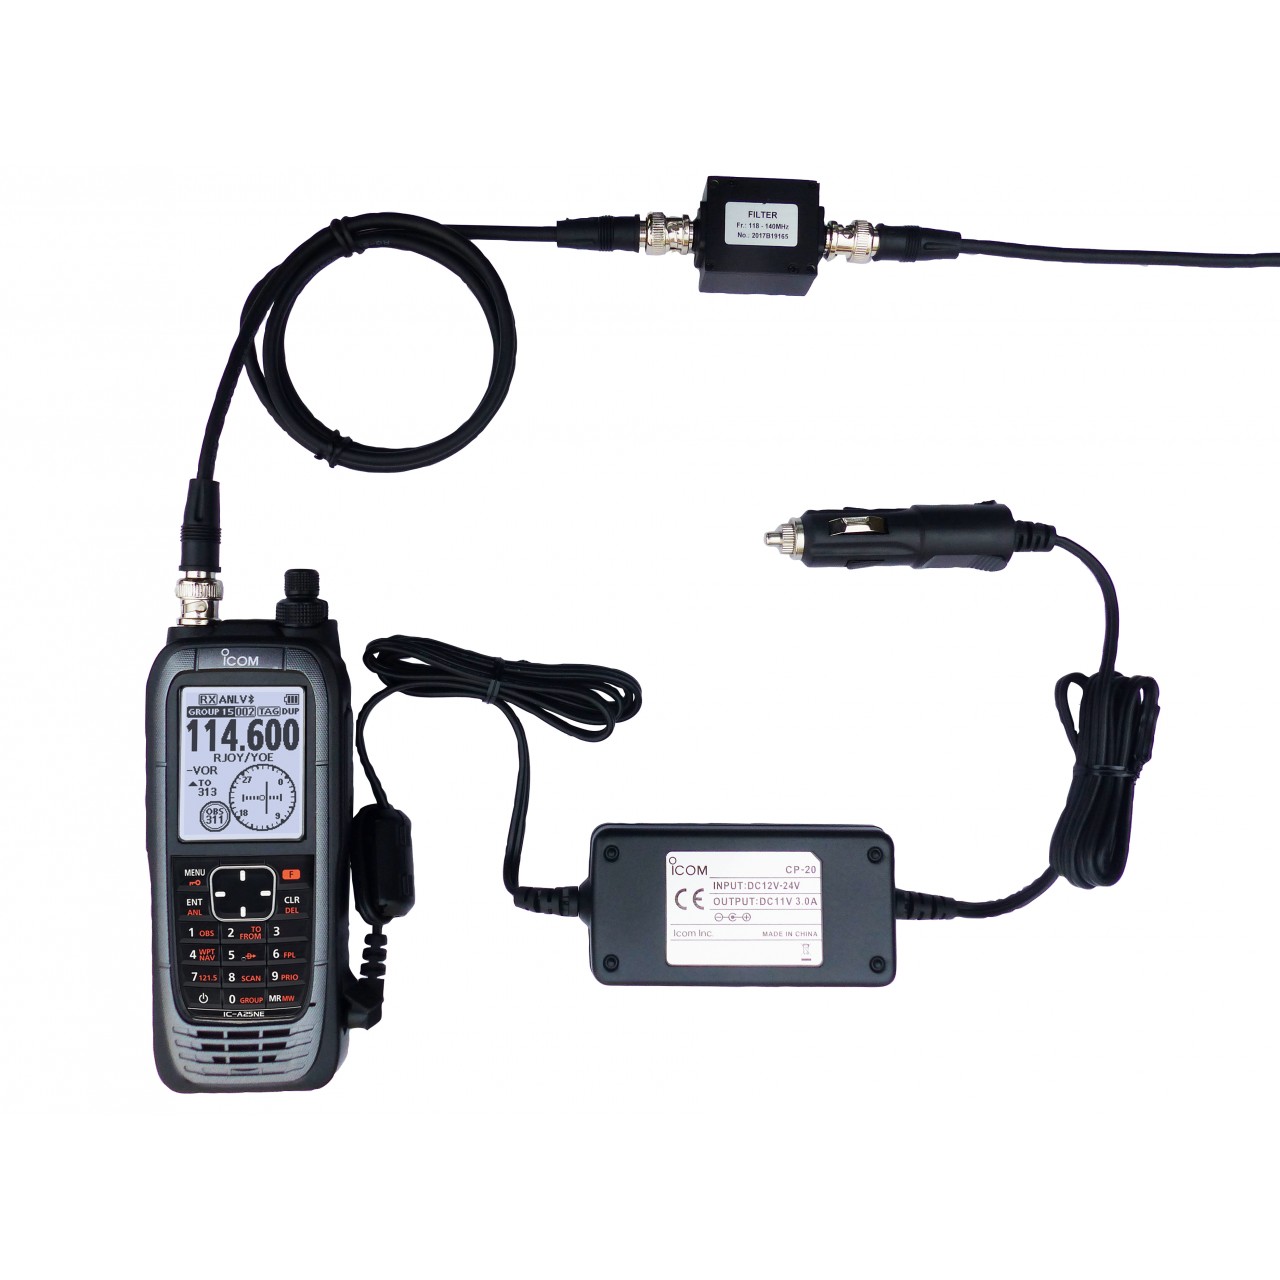 IC-A25NEFR Handhelds - ICOM